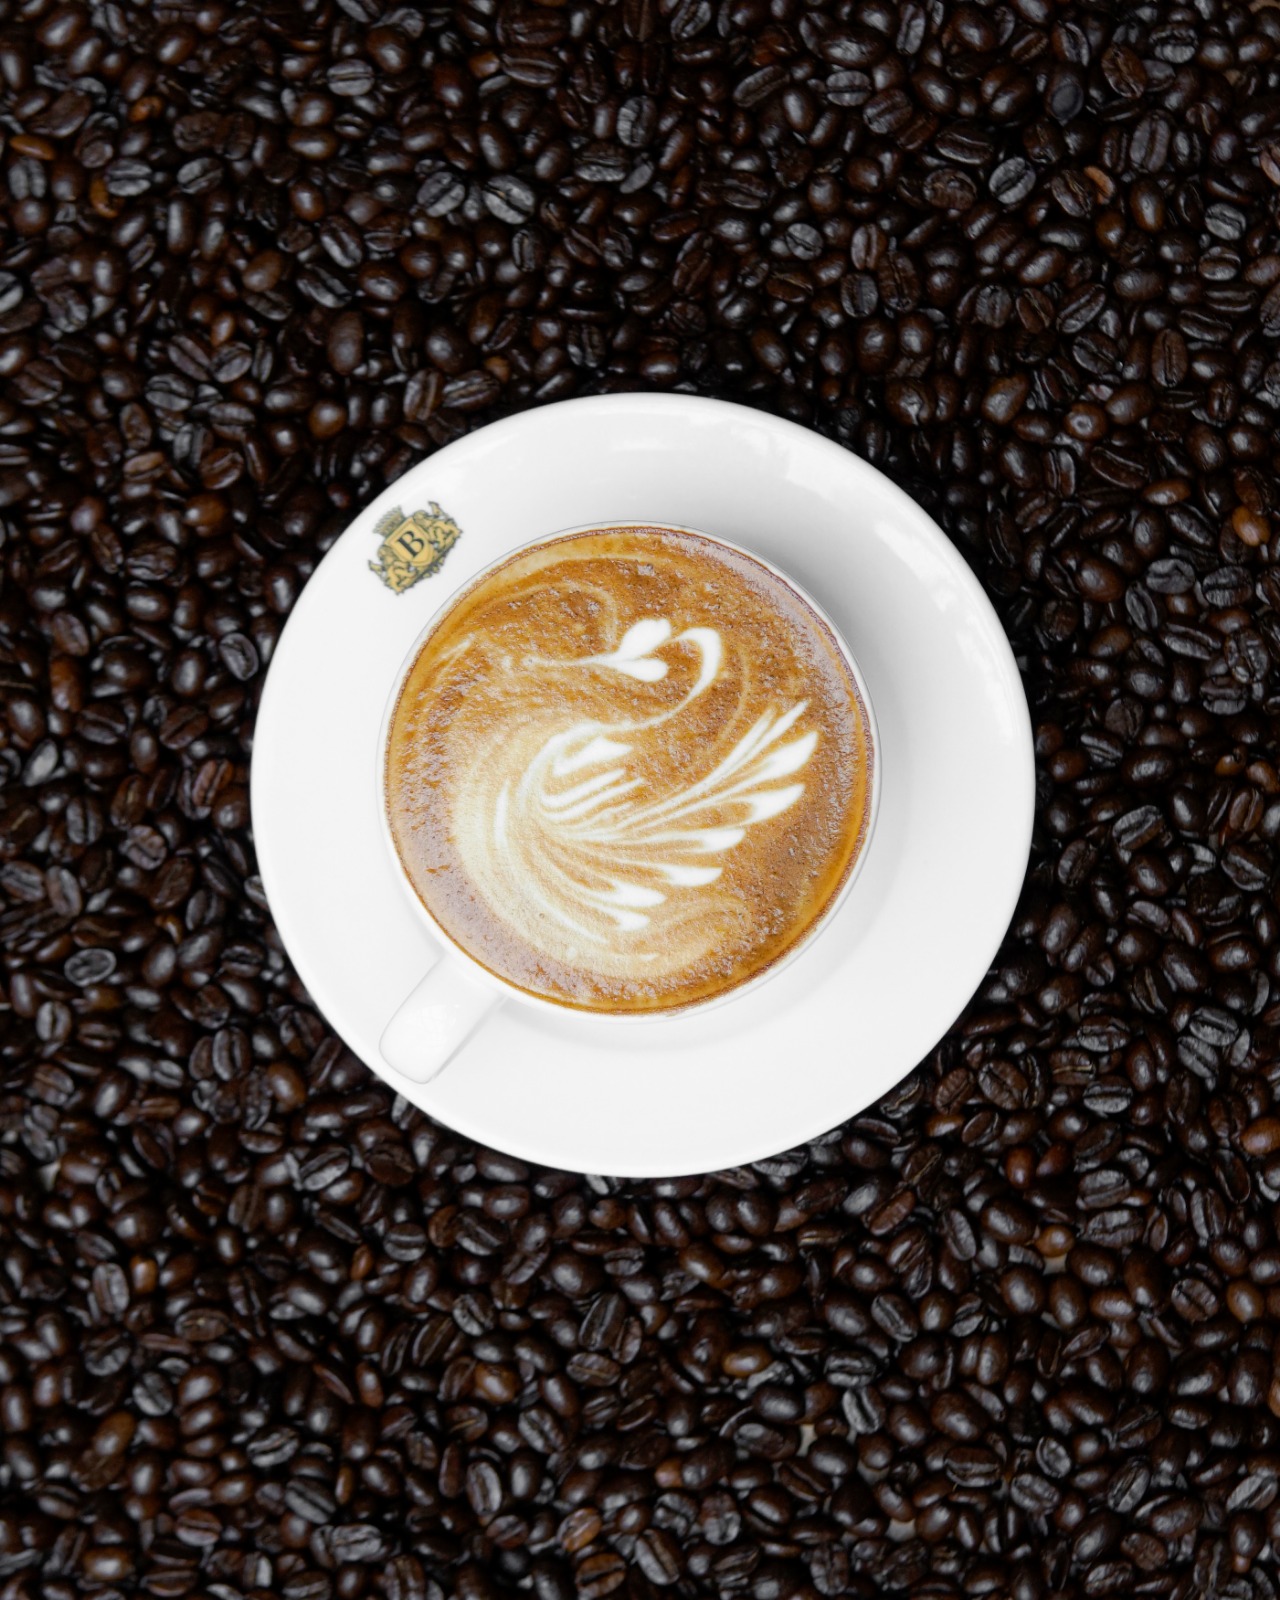 1 Ekim Dünya Kahve Günü tarihi Beta Yeni Han’da bir başka güzel geçecek